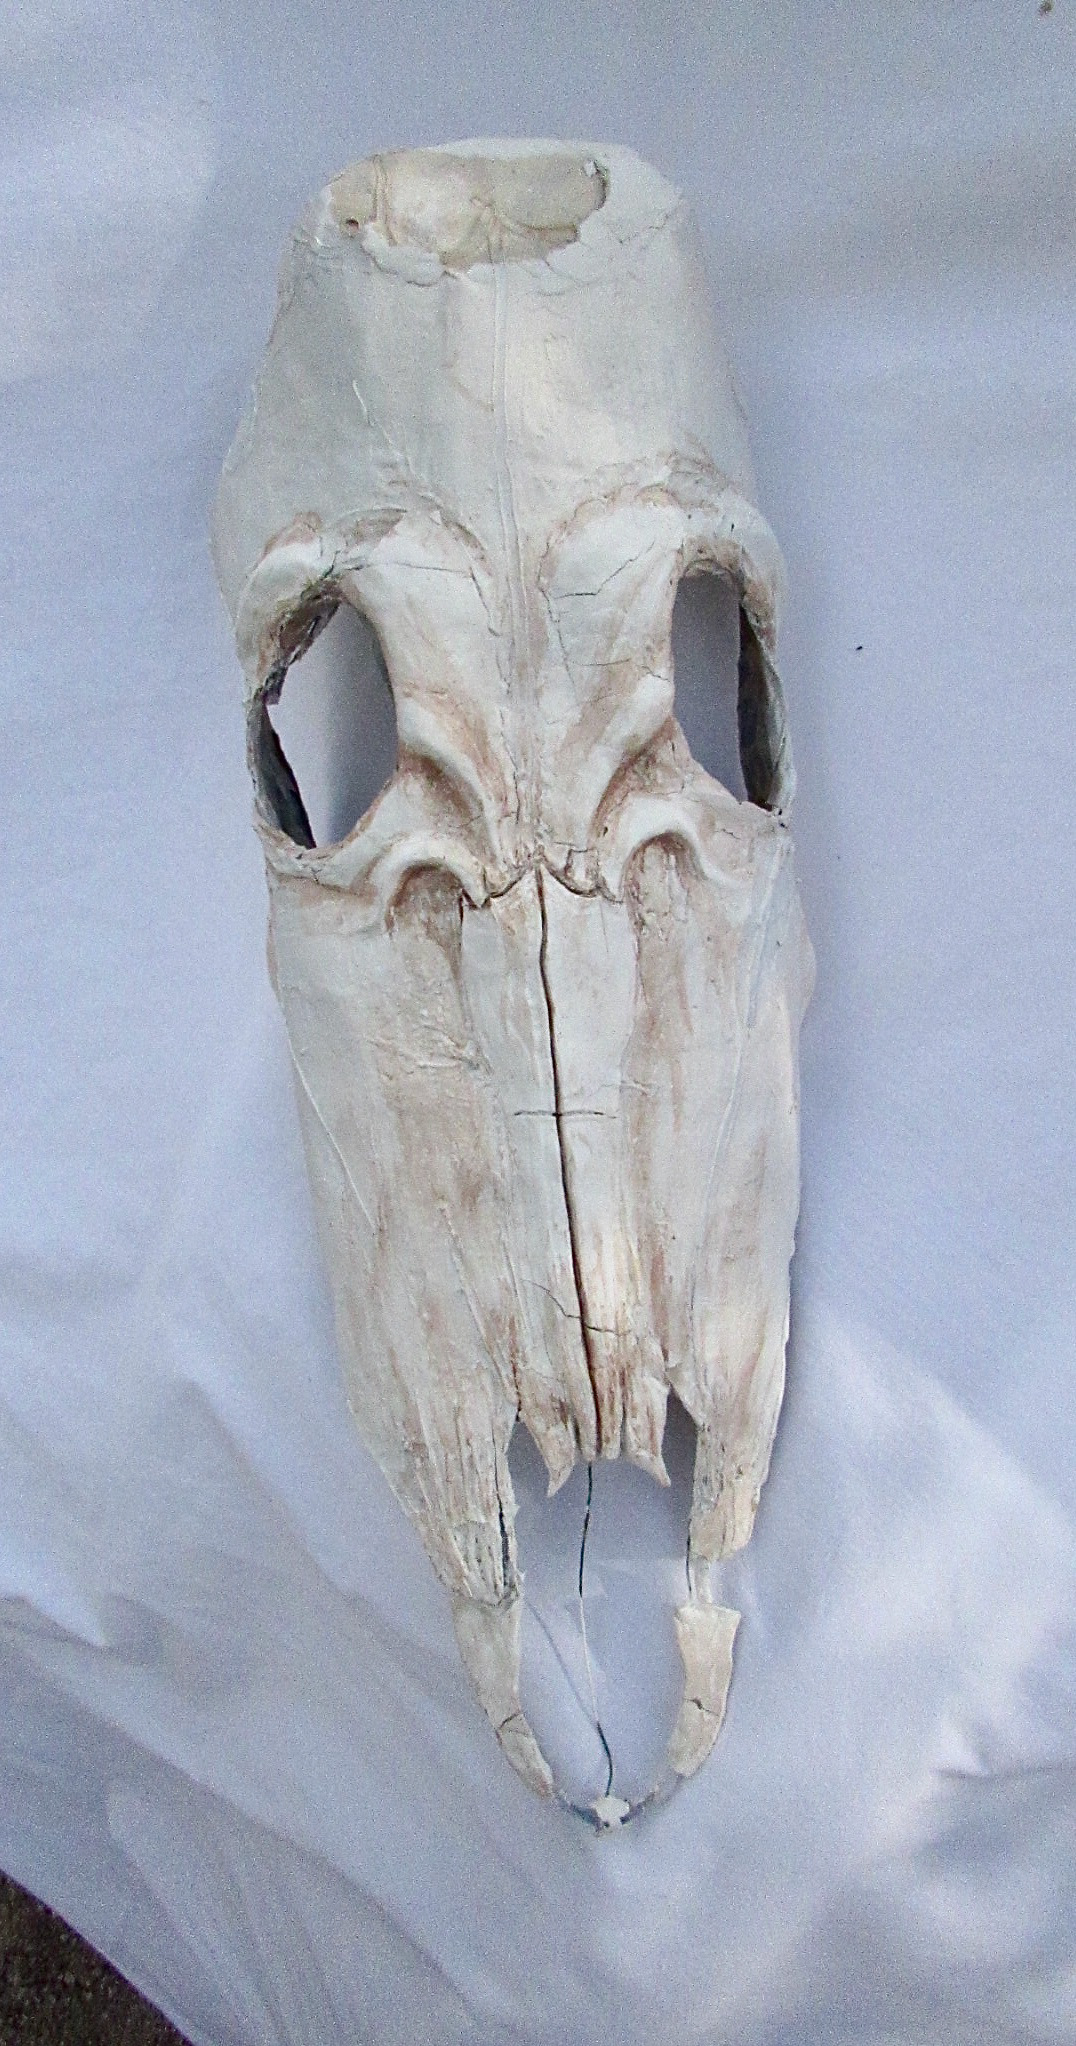 Finn Amygdalitsis - Masquerade Masks